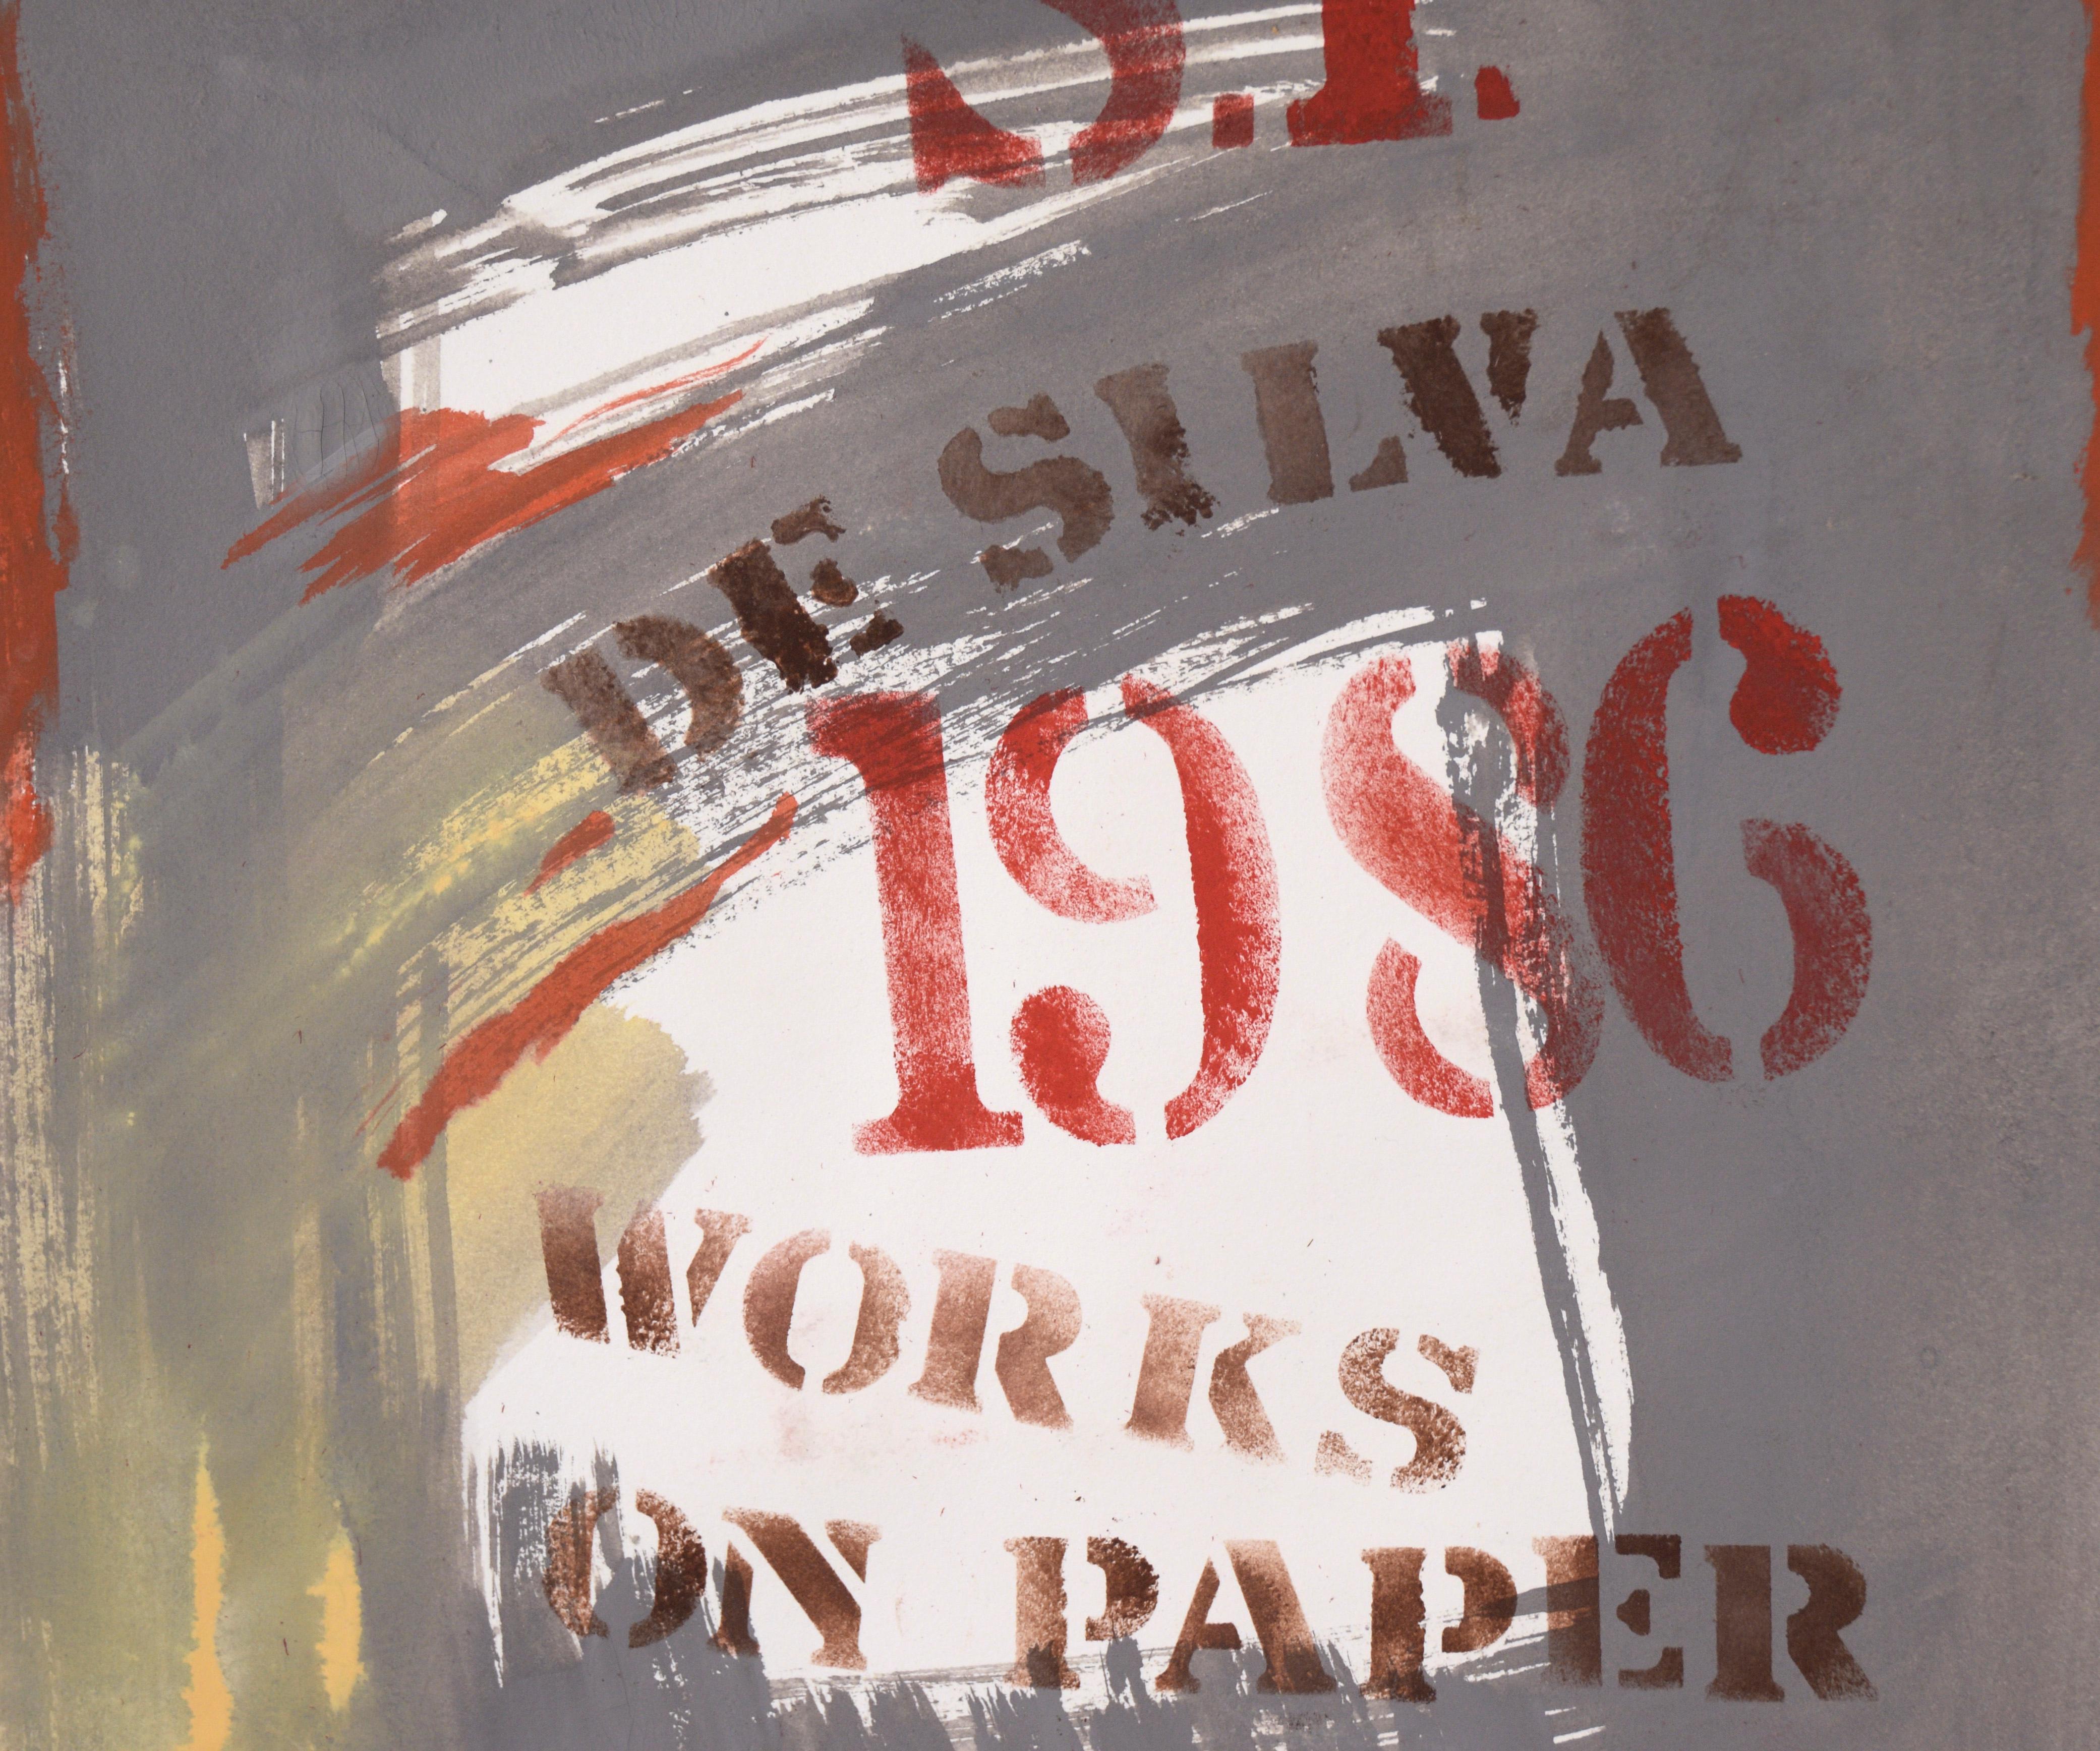 Show-Poster, Monoprint (Arbeiten auf Papier) – Vintage, lateinamerikanische Schule

Kühnes Ausstellungsplakat des in Kalifornien lebenden lateinamerikanischen Künstlers Ricardo de Silva (Amerikaner/Brasilianer, 20. Jahrhundert). Dieses Werk ist ein